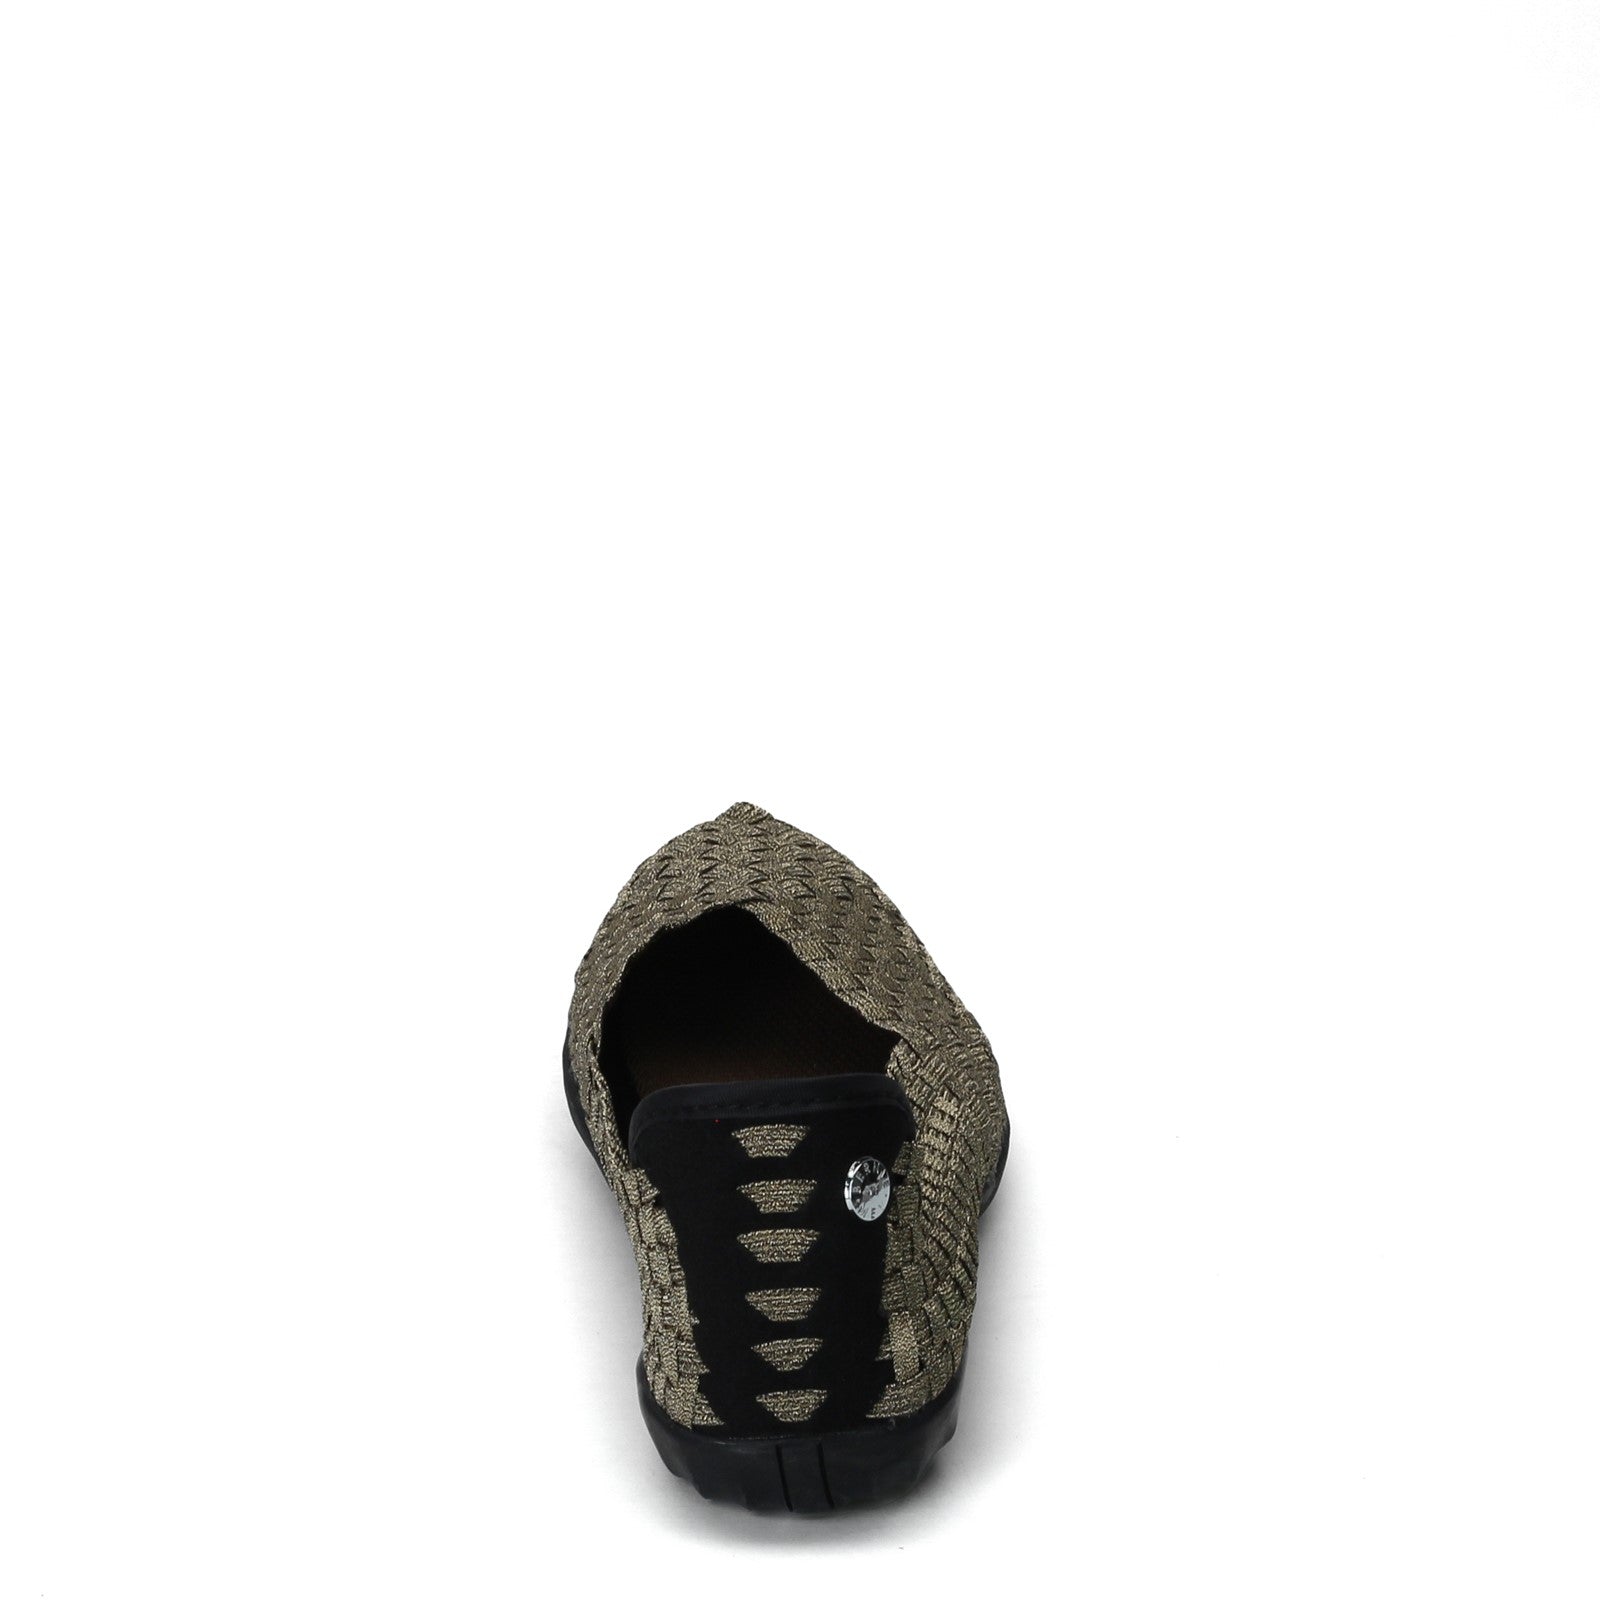 Catwalk Bronze Heels Sandal - Buy Catwalk Bronze Heels Sandal online in  India